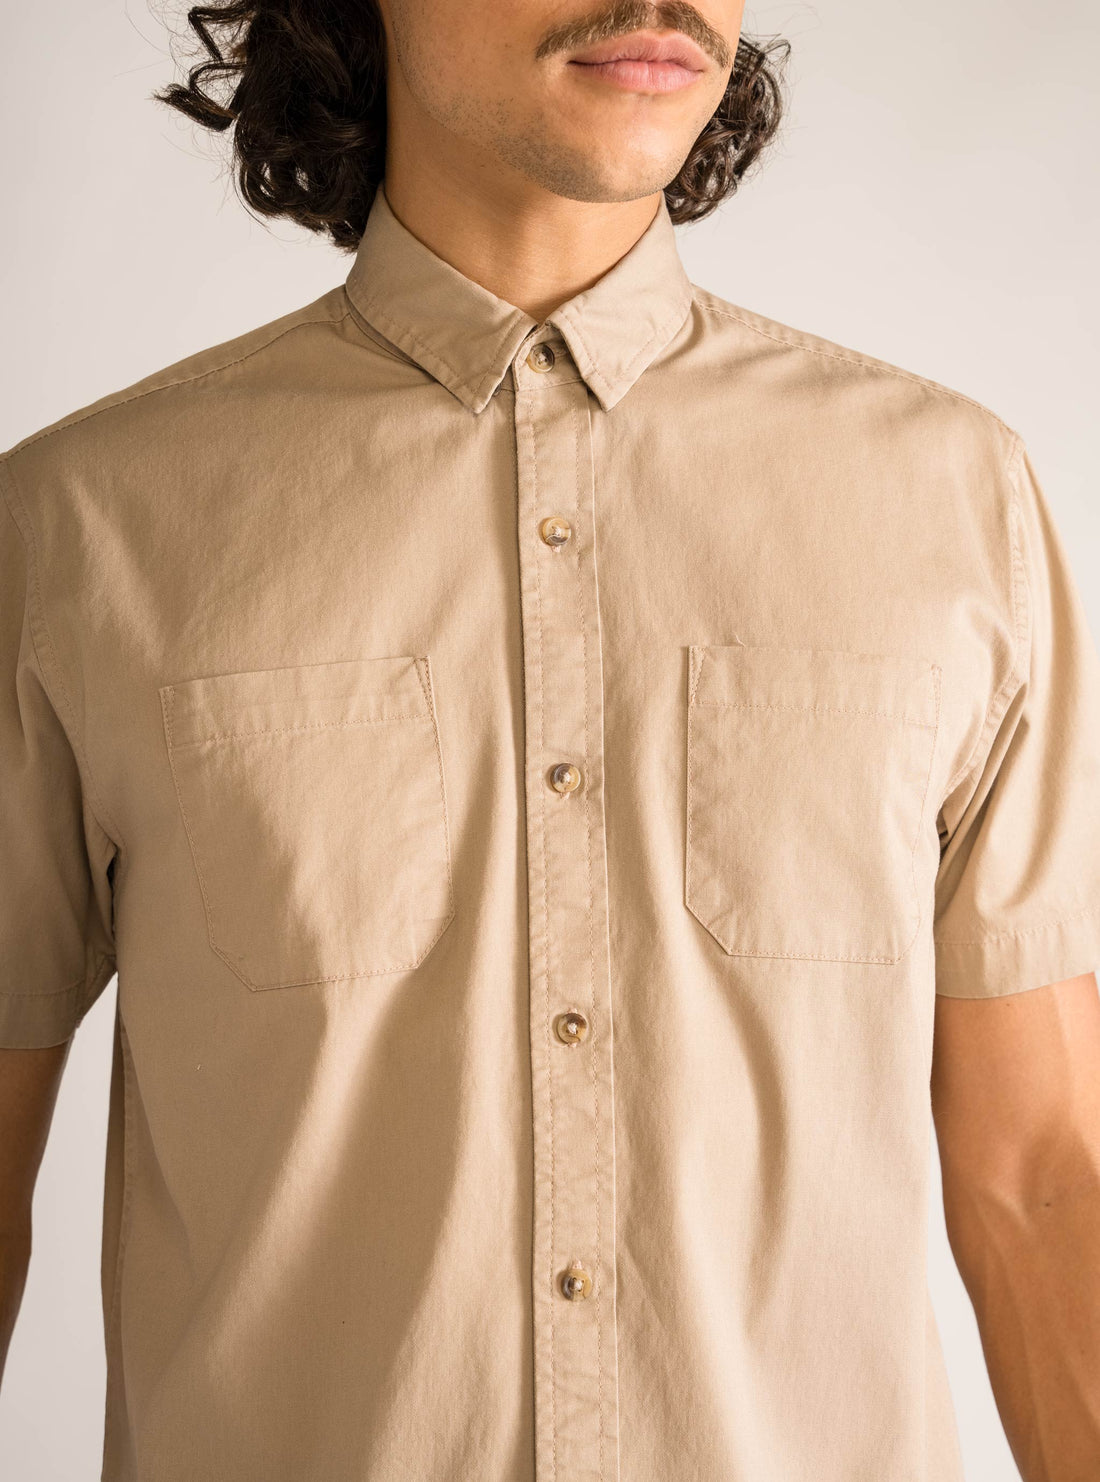 Swalla Short Sleeve Shirt, Kaky